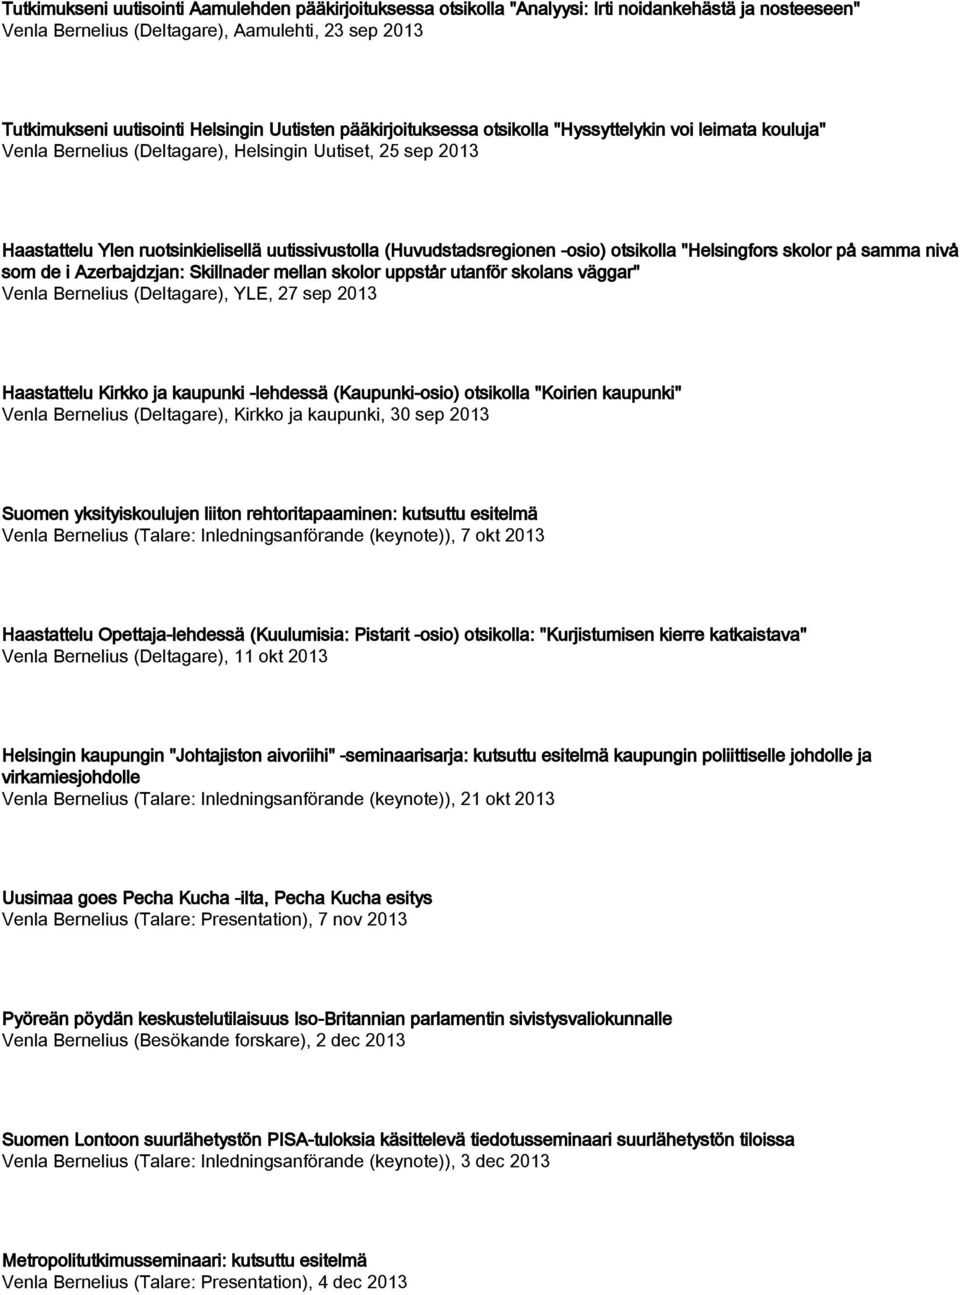 (Huvudstadsregionen -osio) otsikolla "Helsingfors skolor på samma nivå som de i Azerbajdzjan: Skillnader mellan skolor uppstår utanför skolans väggar" Venla Bernelius (Deltagare), YLE, 27 sep 2013